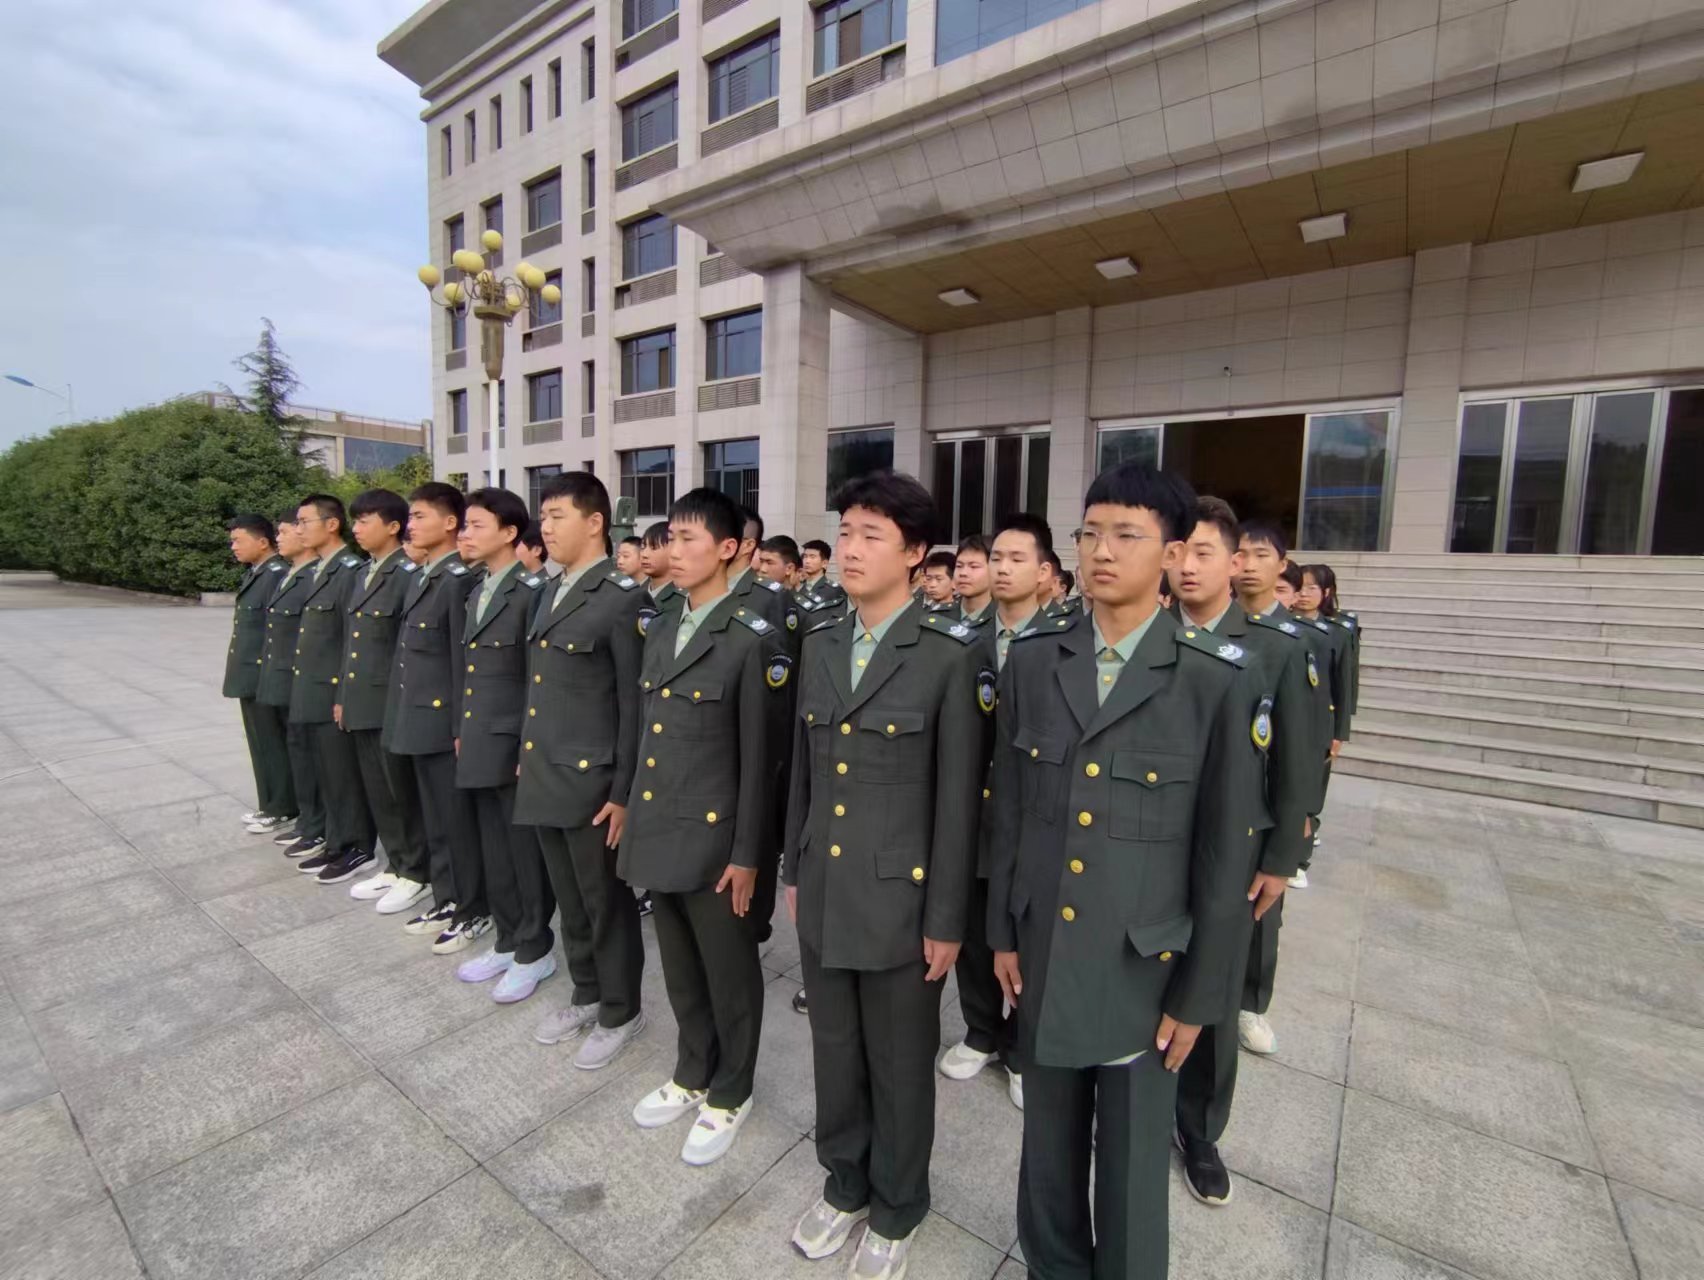 【身着新校服·奋斗正青春】——陕西防务技工学校举行23级新生着装仪式